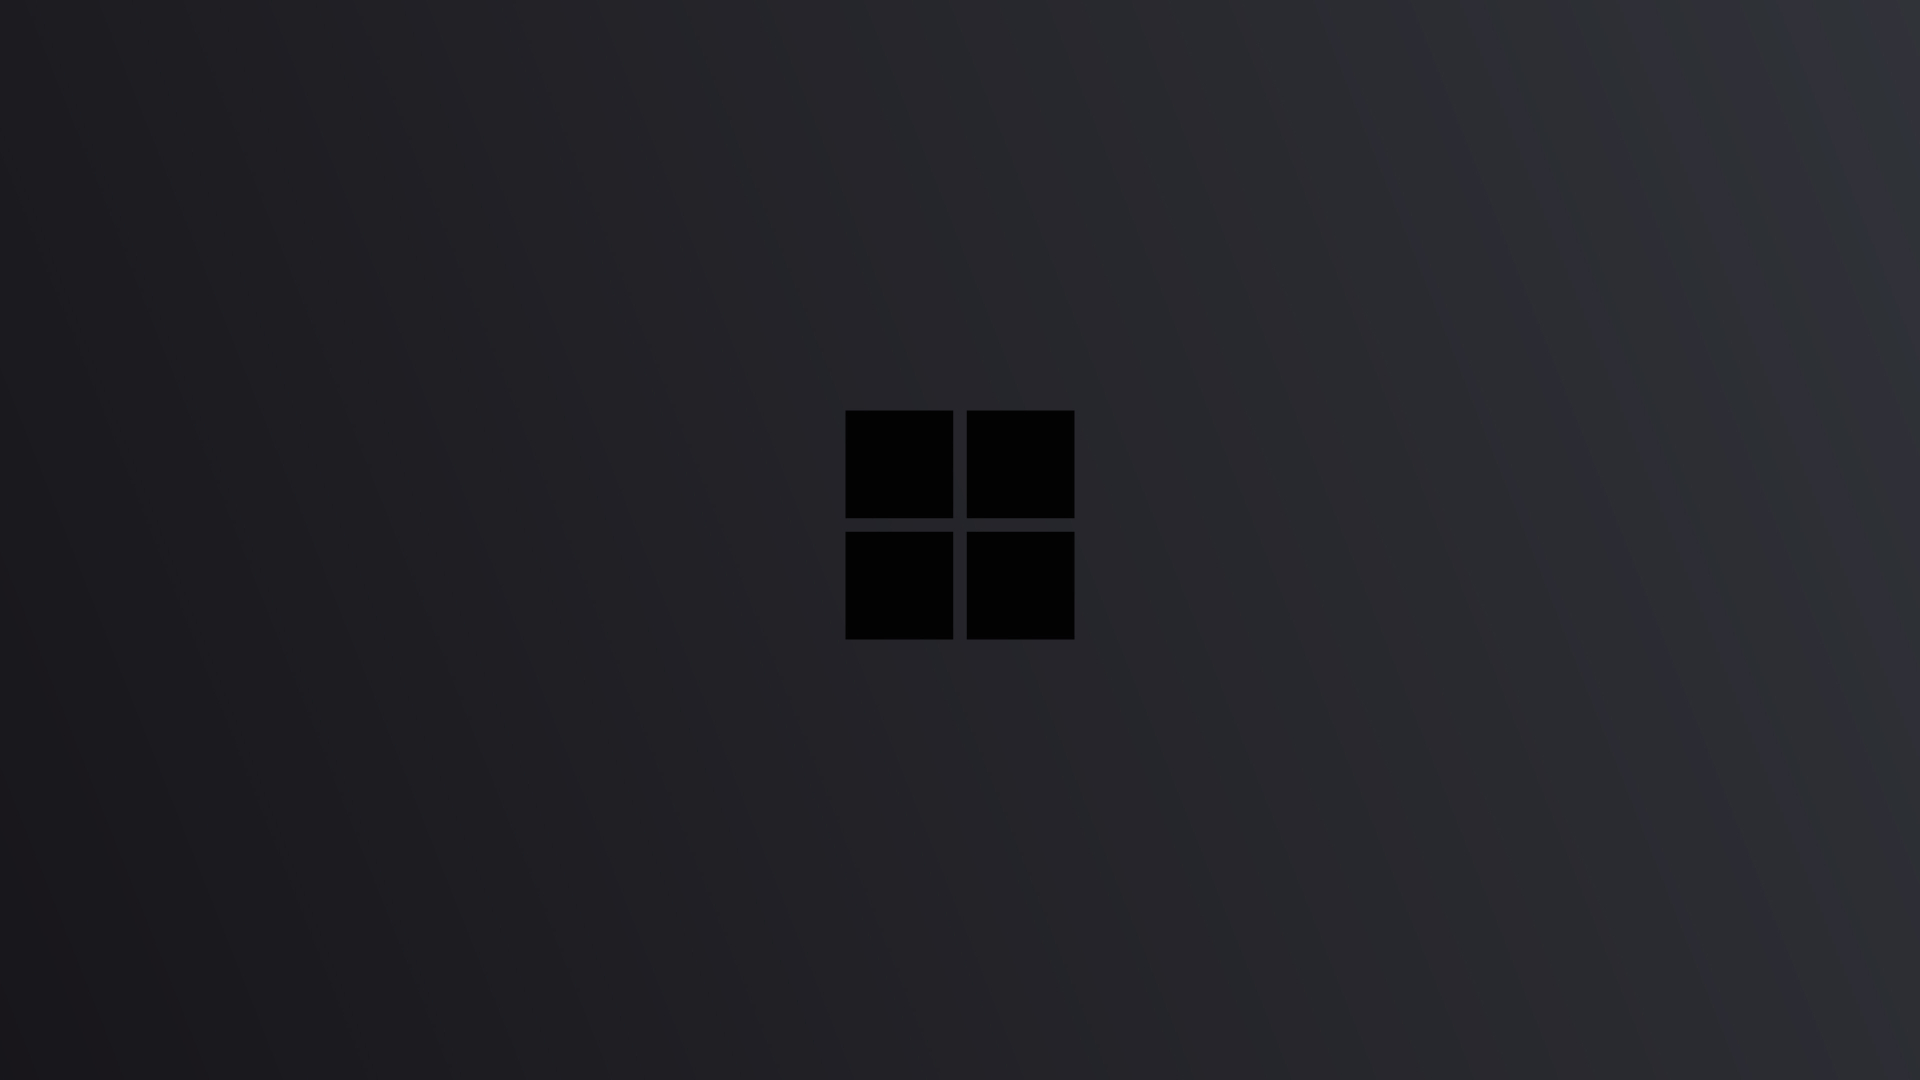 1920x1080 Windows 10 Logo Minimal Dark